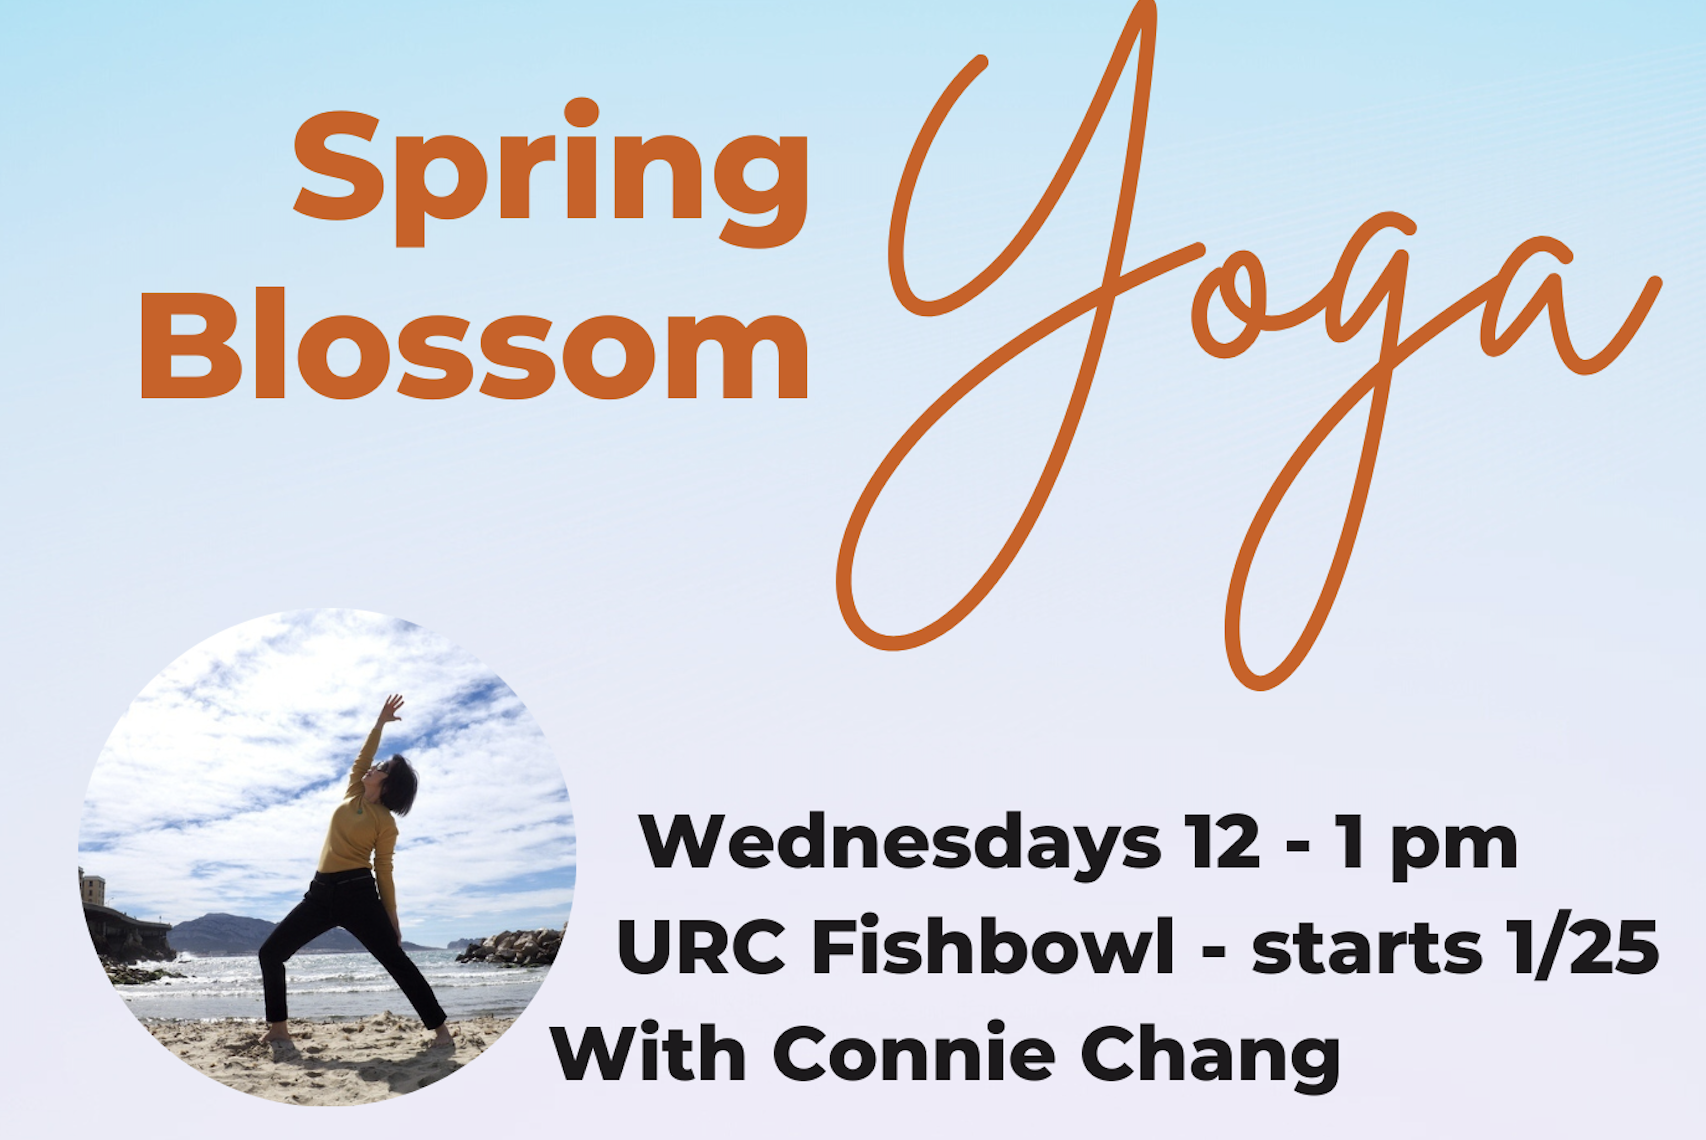 Spring Blossom Yoga